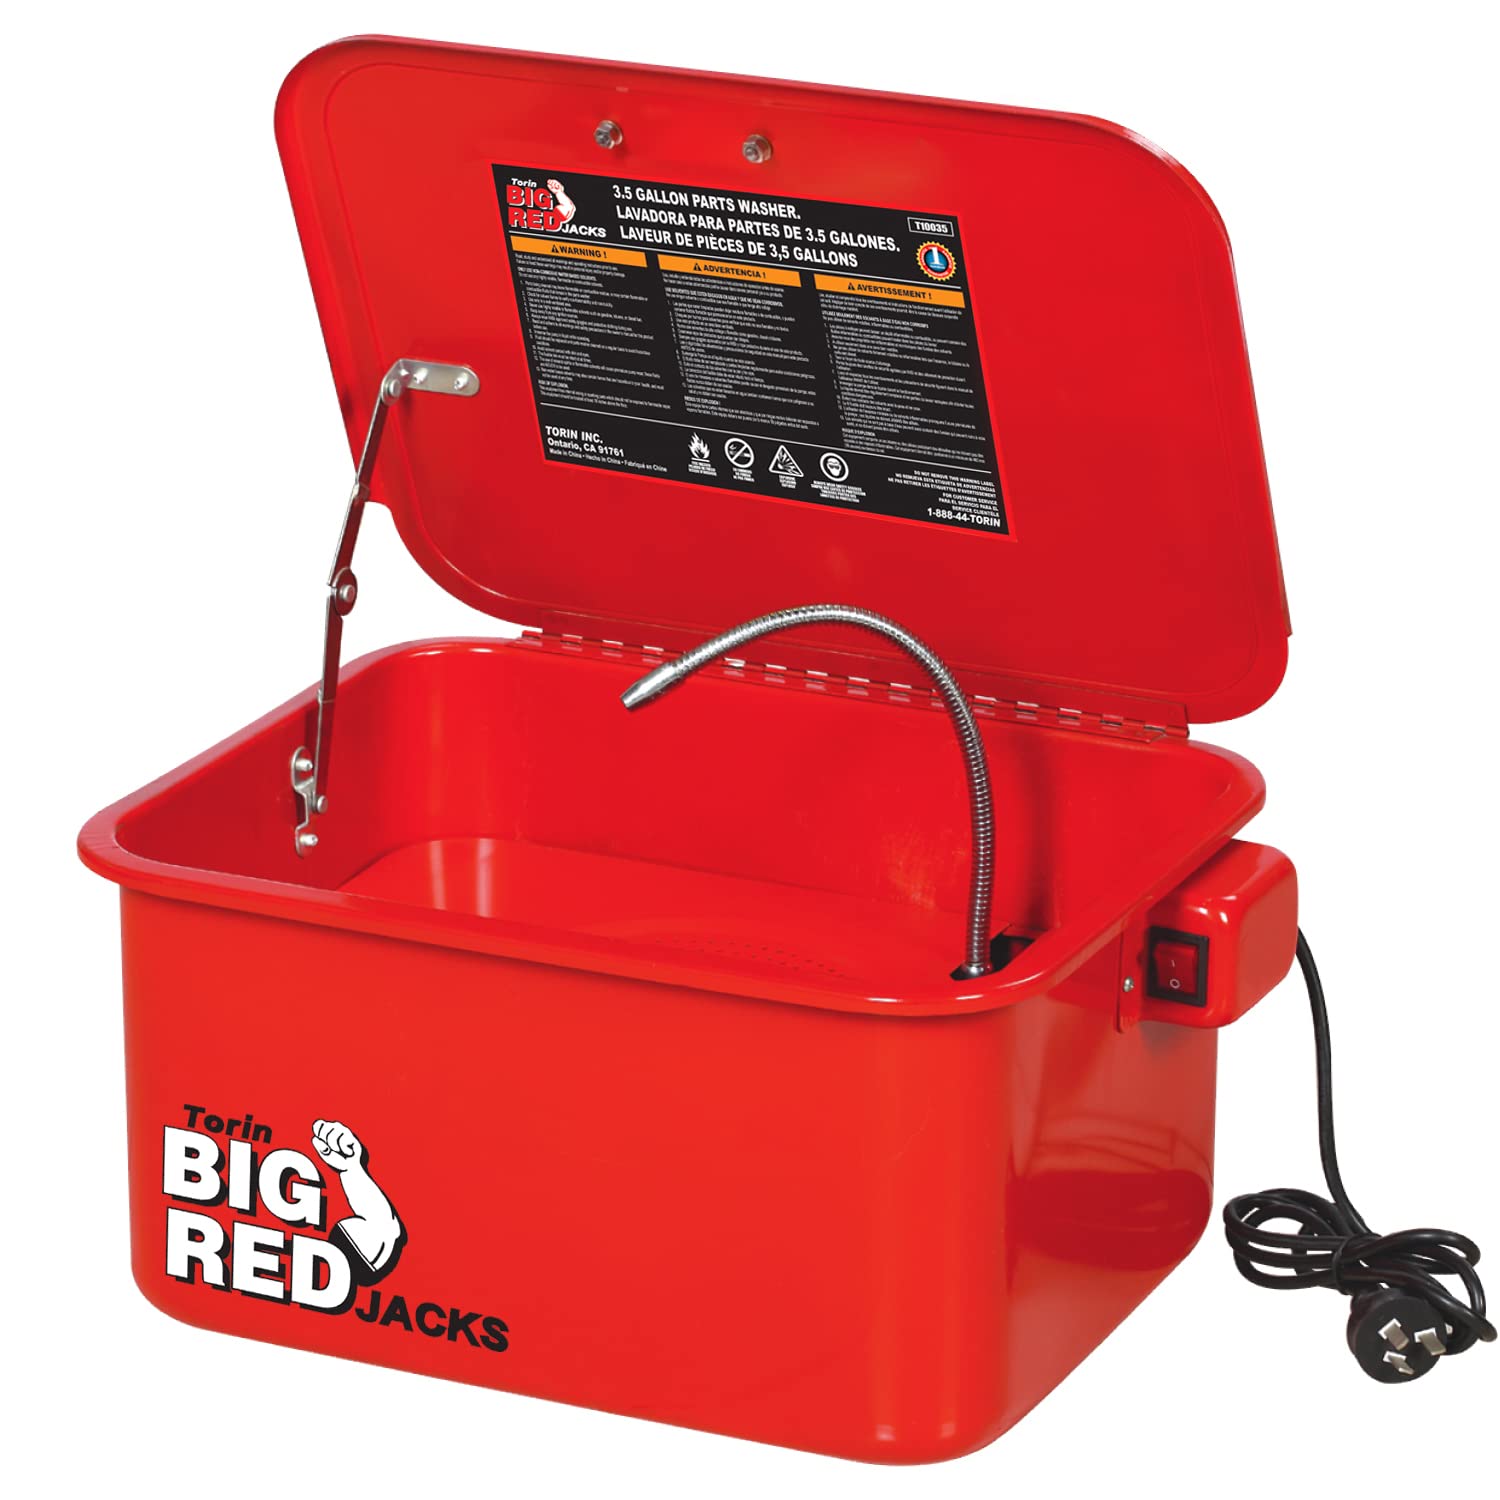 Torin T10035 Part Washer - 3.5 Gallon von Big Red